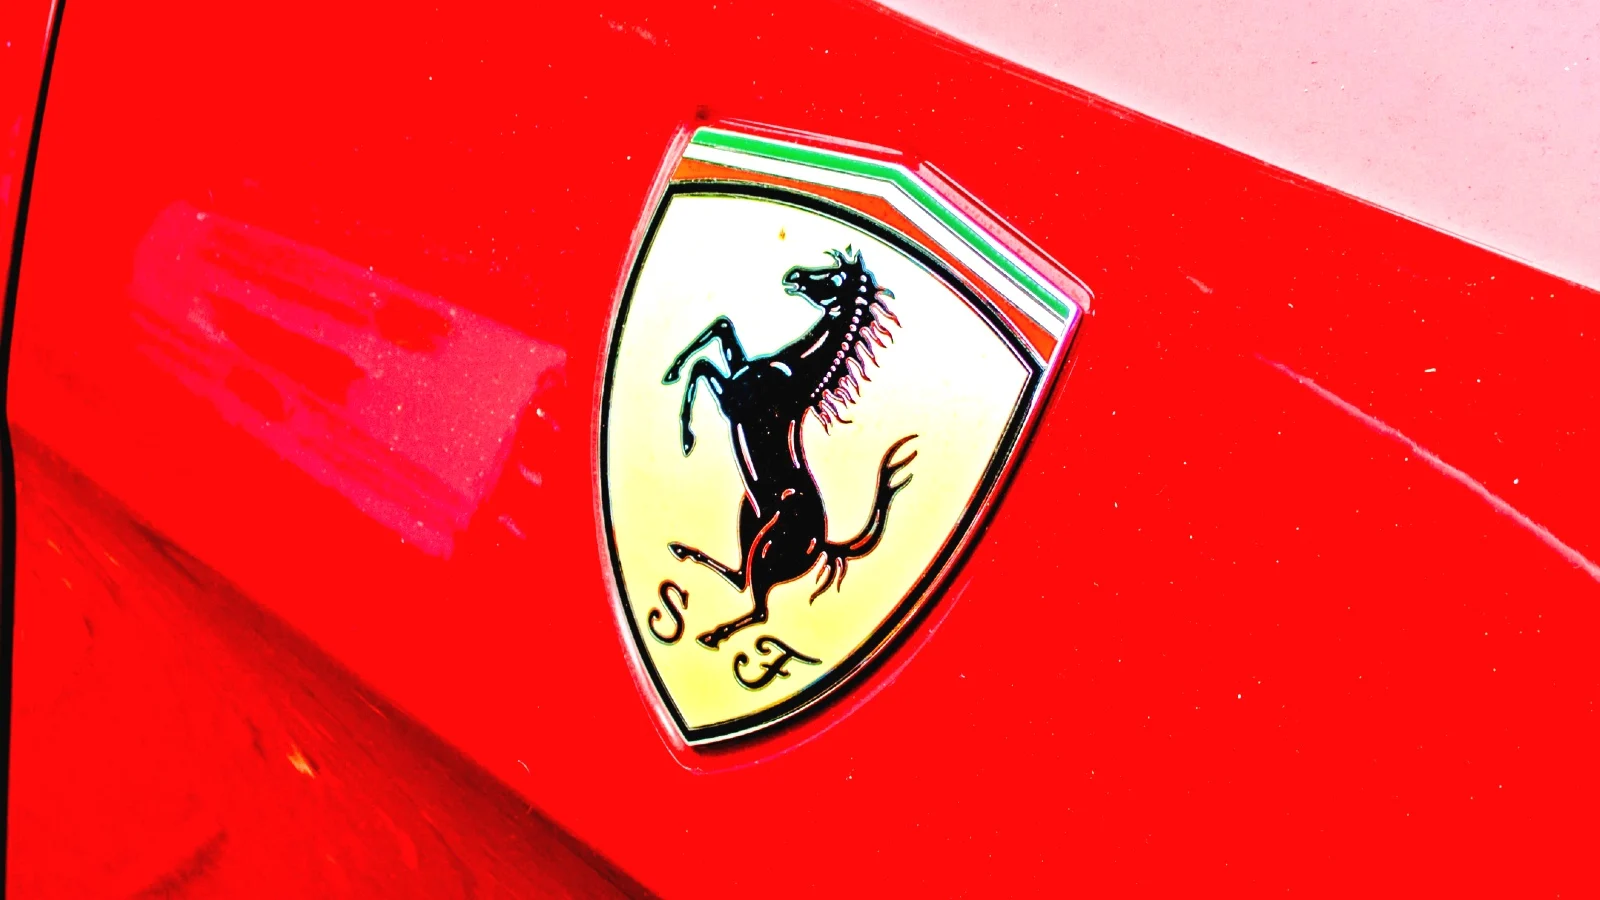 20 Marzo 2023 – Ferrari sotto attacco hacker